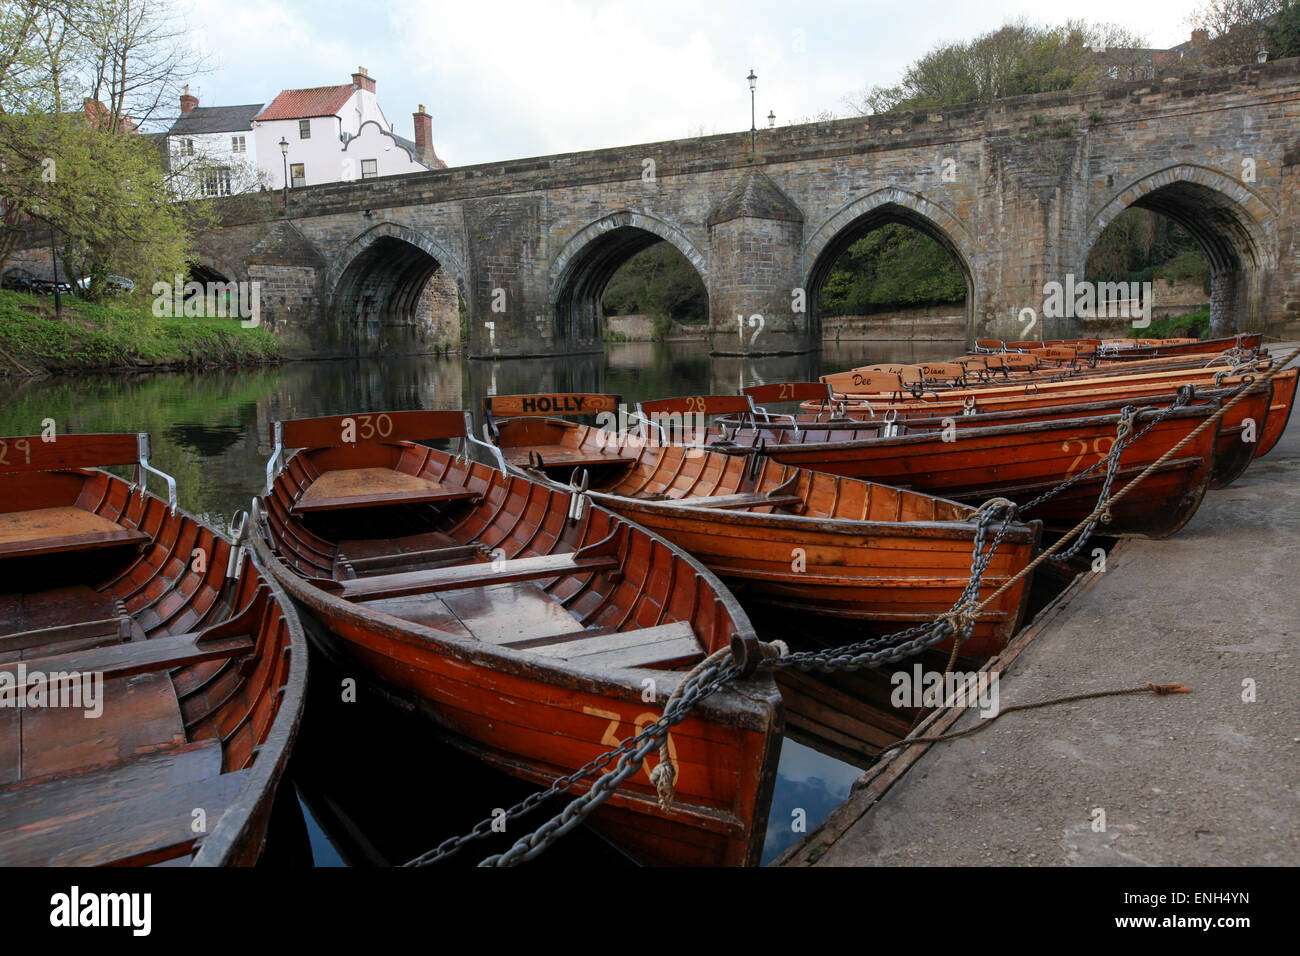 La tradición de botes a remo de madera sobre el río con puente Elvet desgaste en el fondo en Durham Foto de stock